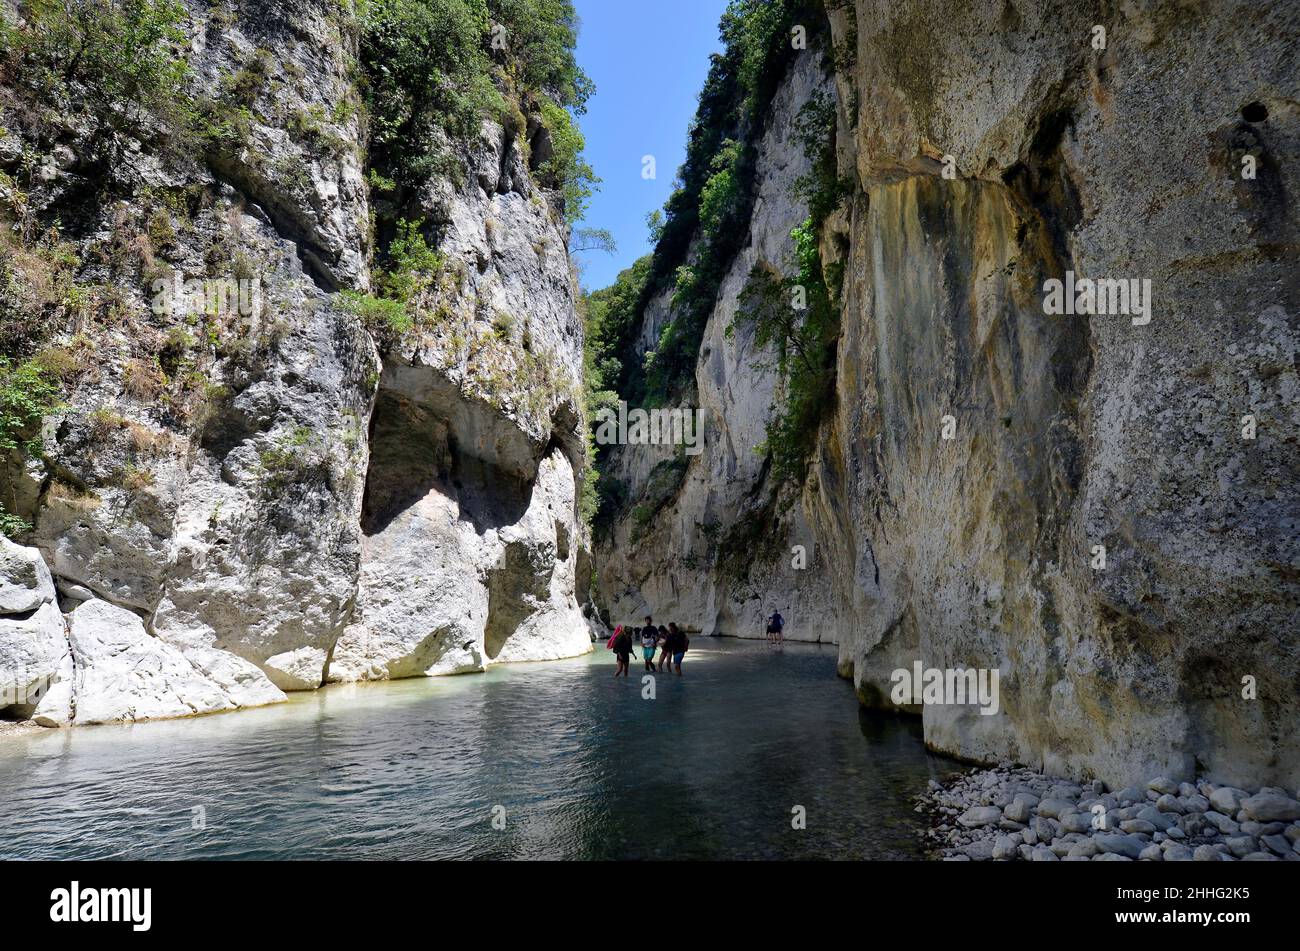 Glyki, Grèce - 29 juin 2021: Touristes inconnus dans l'eau claire mais froide de la rivière Acheron, dans la mythologie grecque, Acheron était l'un des fleuves de Banque D'Images